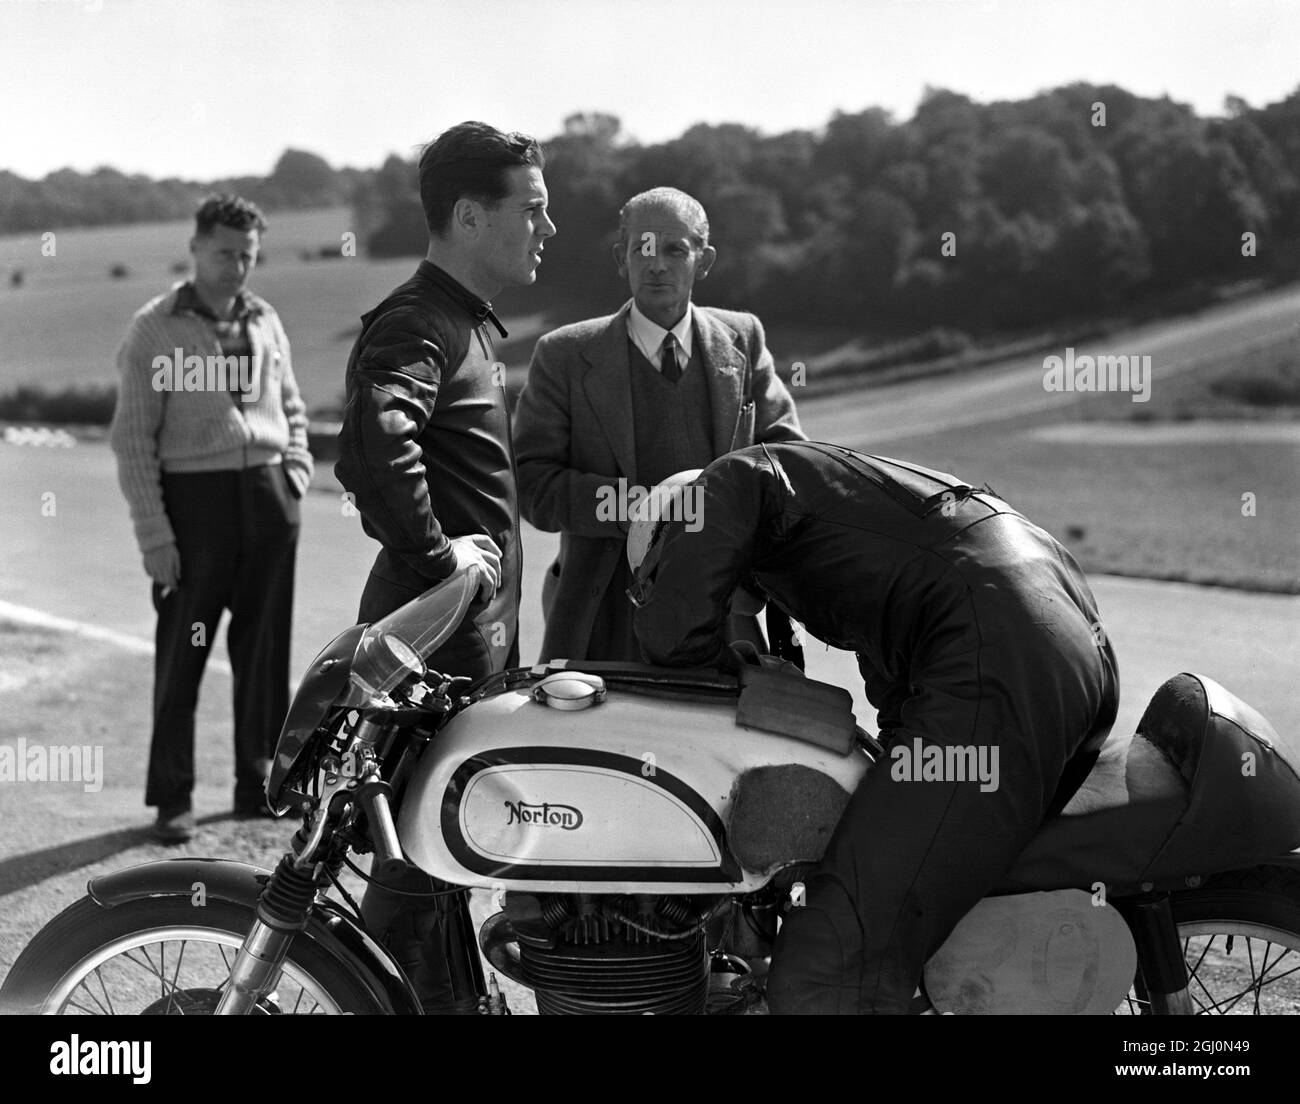 Geoff Duke , (sans casque ) champion de moto de course automobile britannique , se détend et parle à un autre concurrent pendant la pratique au cours du circuit de course Brands Hatch dans le Kent . 24 septembre 1955 Banque D'Images